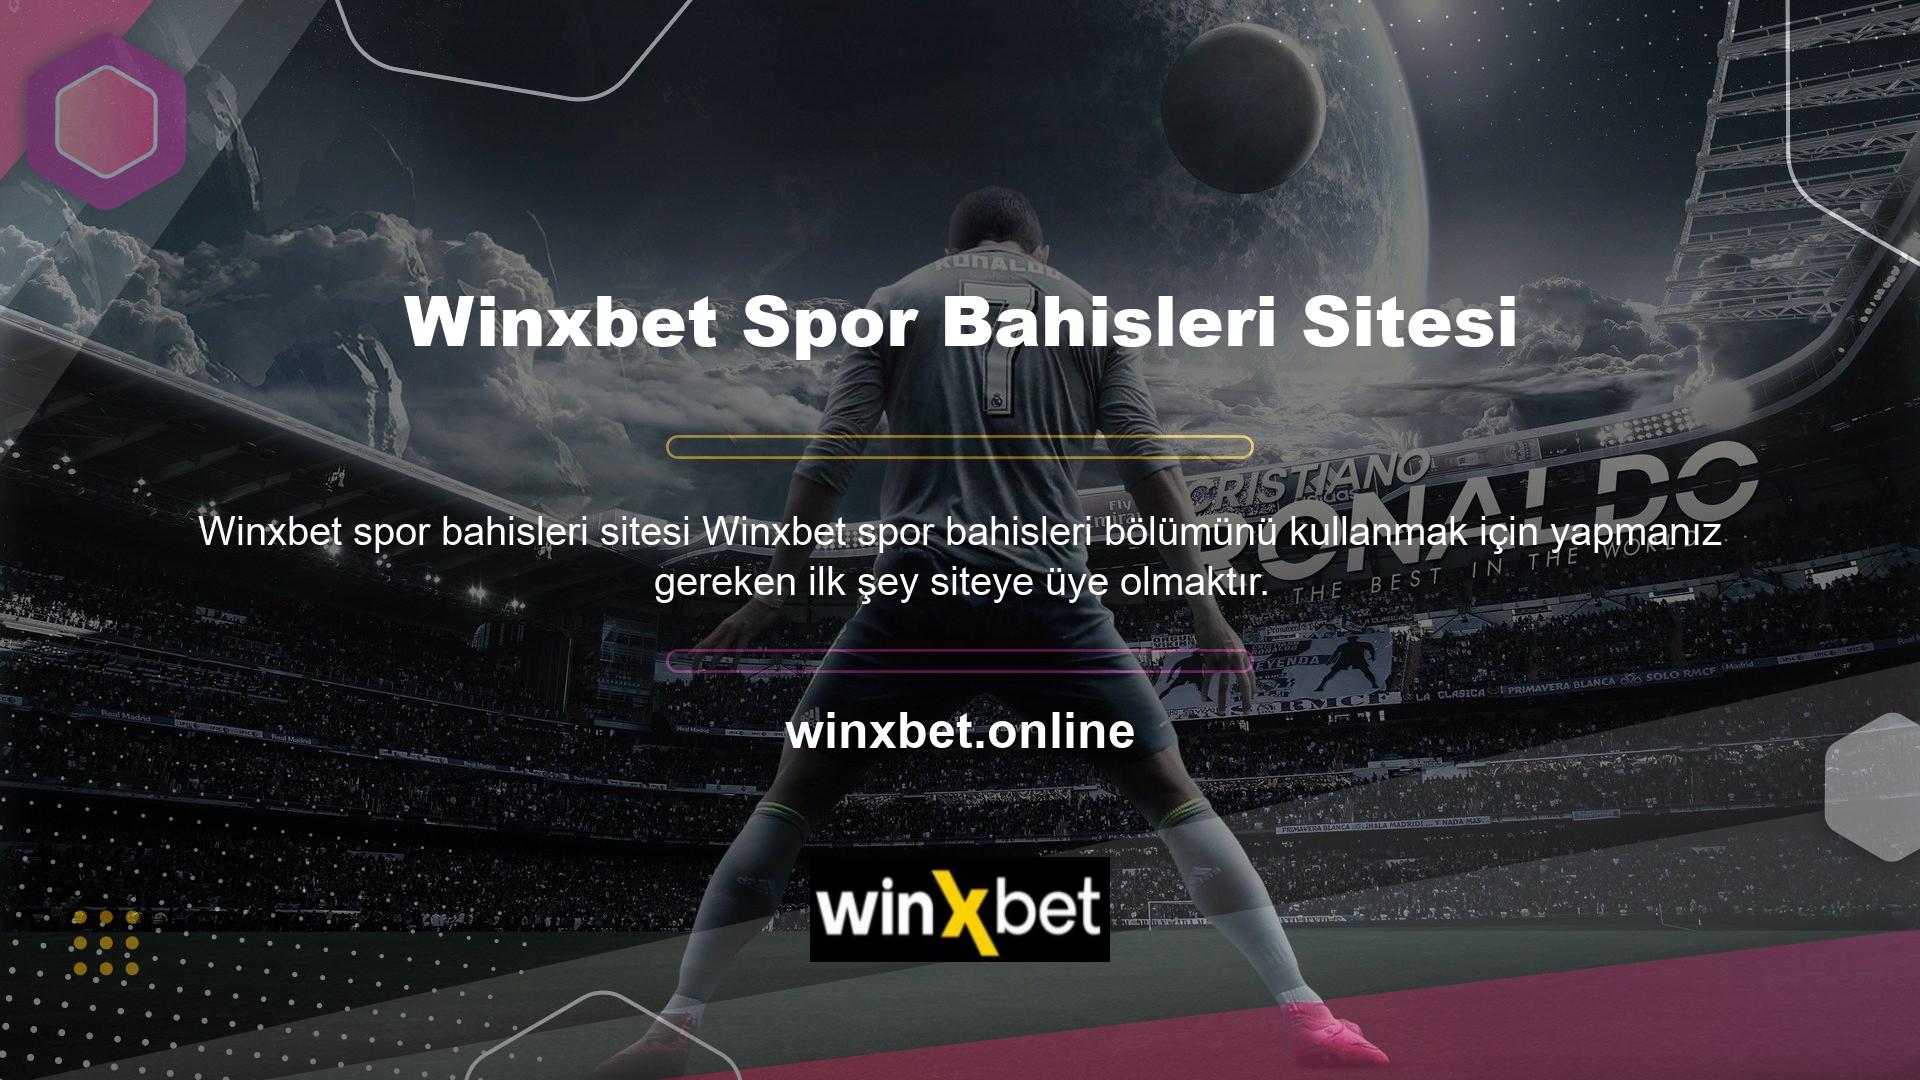 Henüz siteye üye değilseniz 1 dakikalık işlemden sonra sitenin üst kısmında yer alan "Winxbet web sitesine giriş yap" butonuna tıklayarak Winxbet hesabı oluşturabilirsiniz